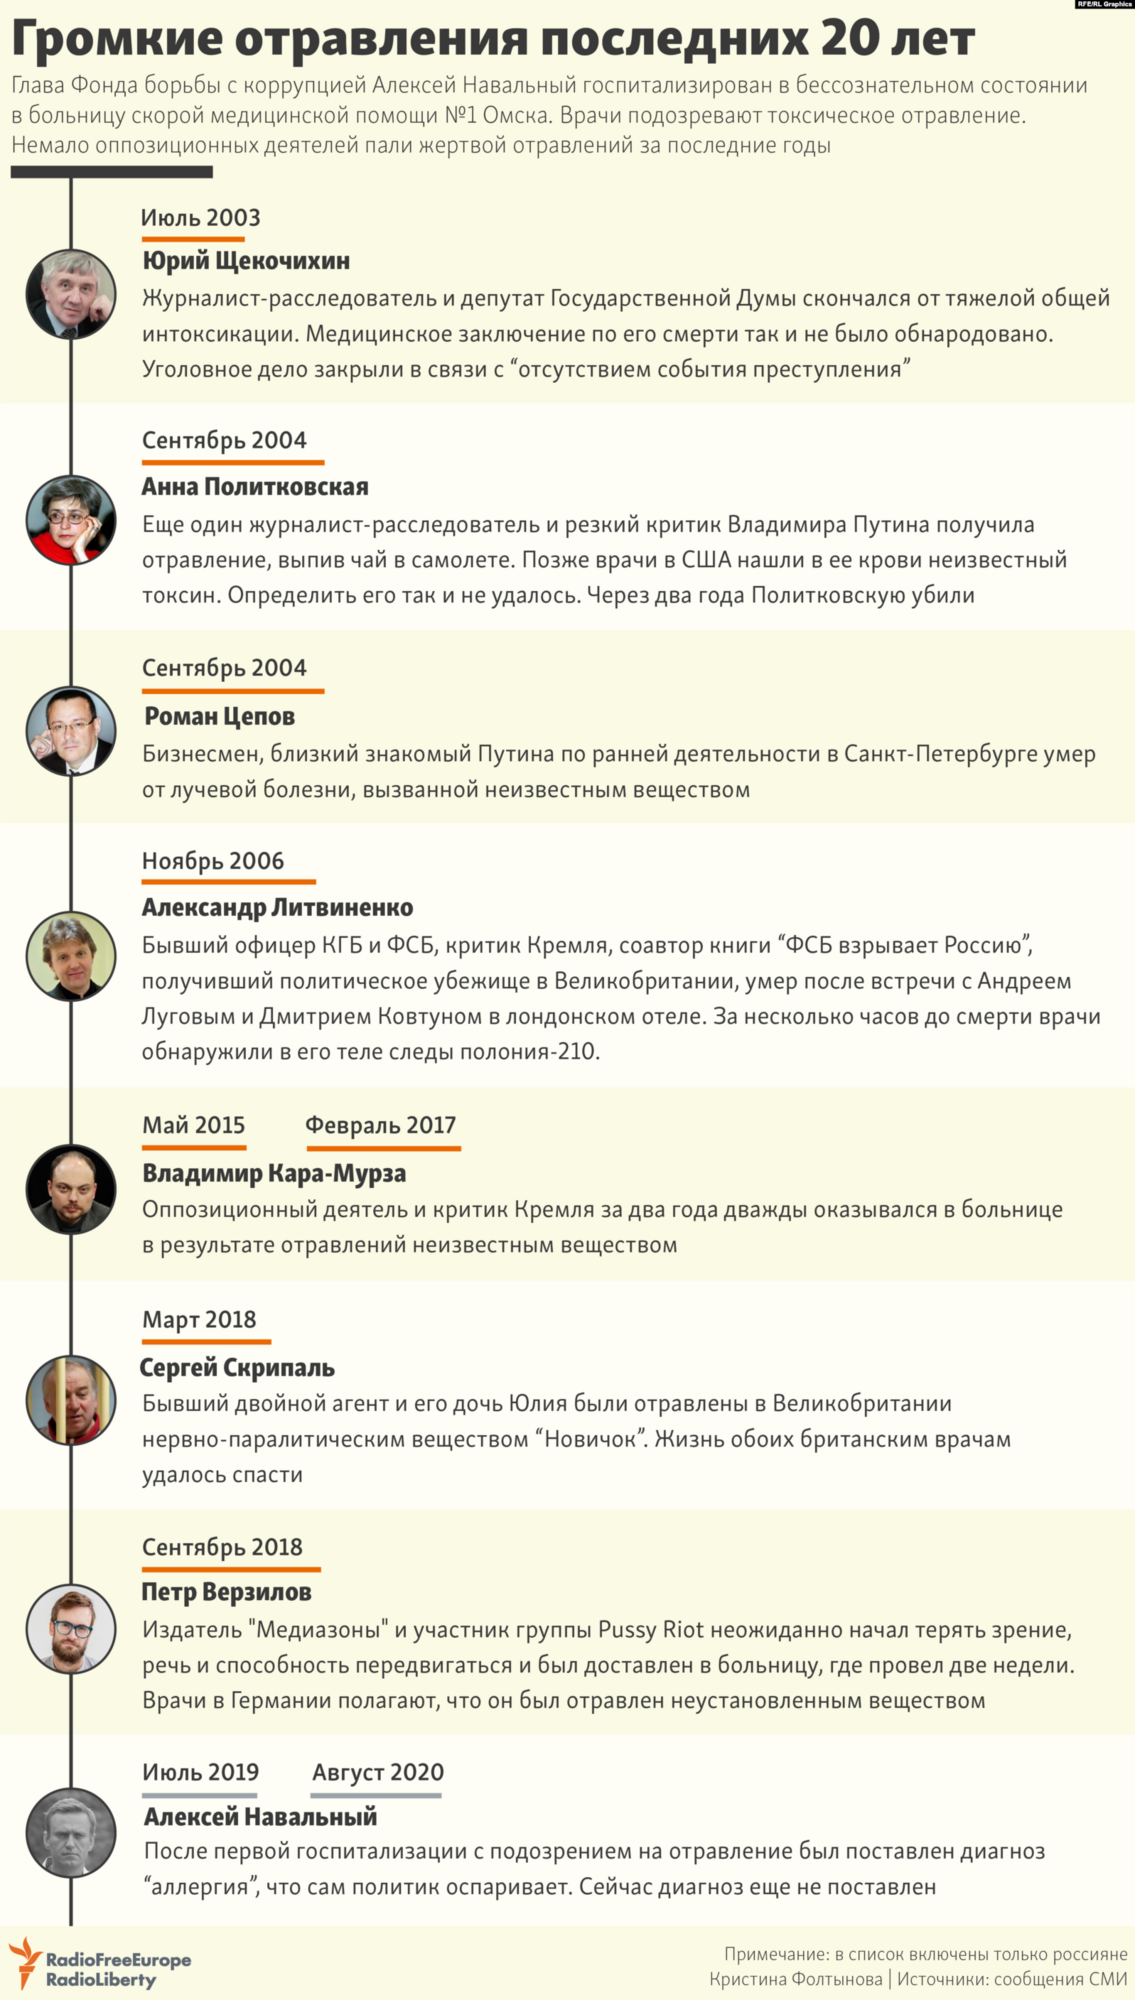 Найгучніші отруєння критиків російської влади за 20 років